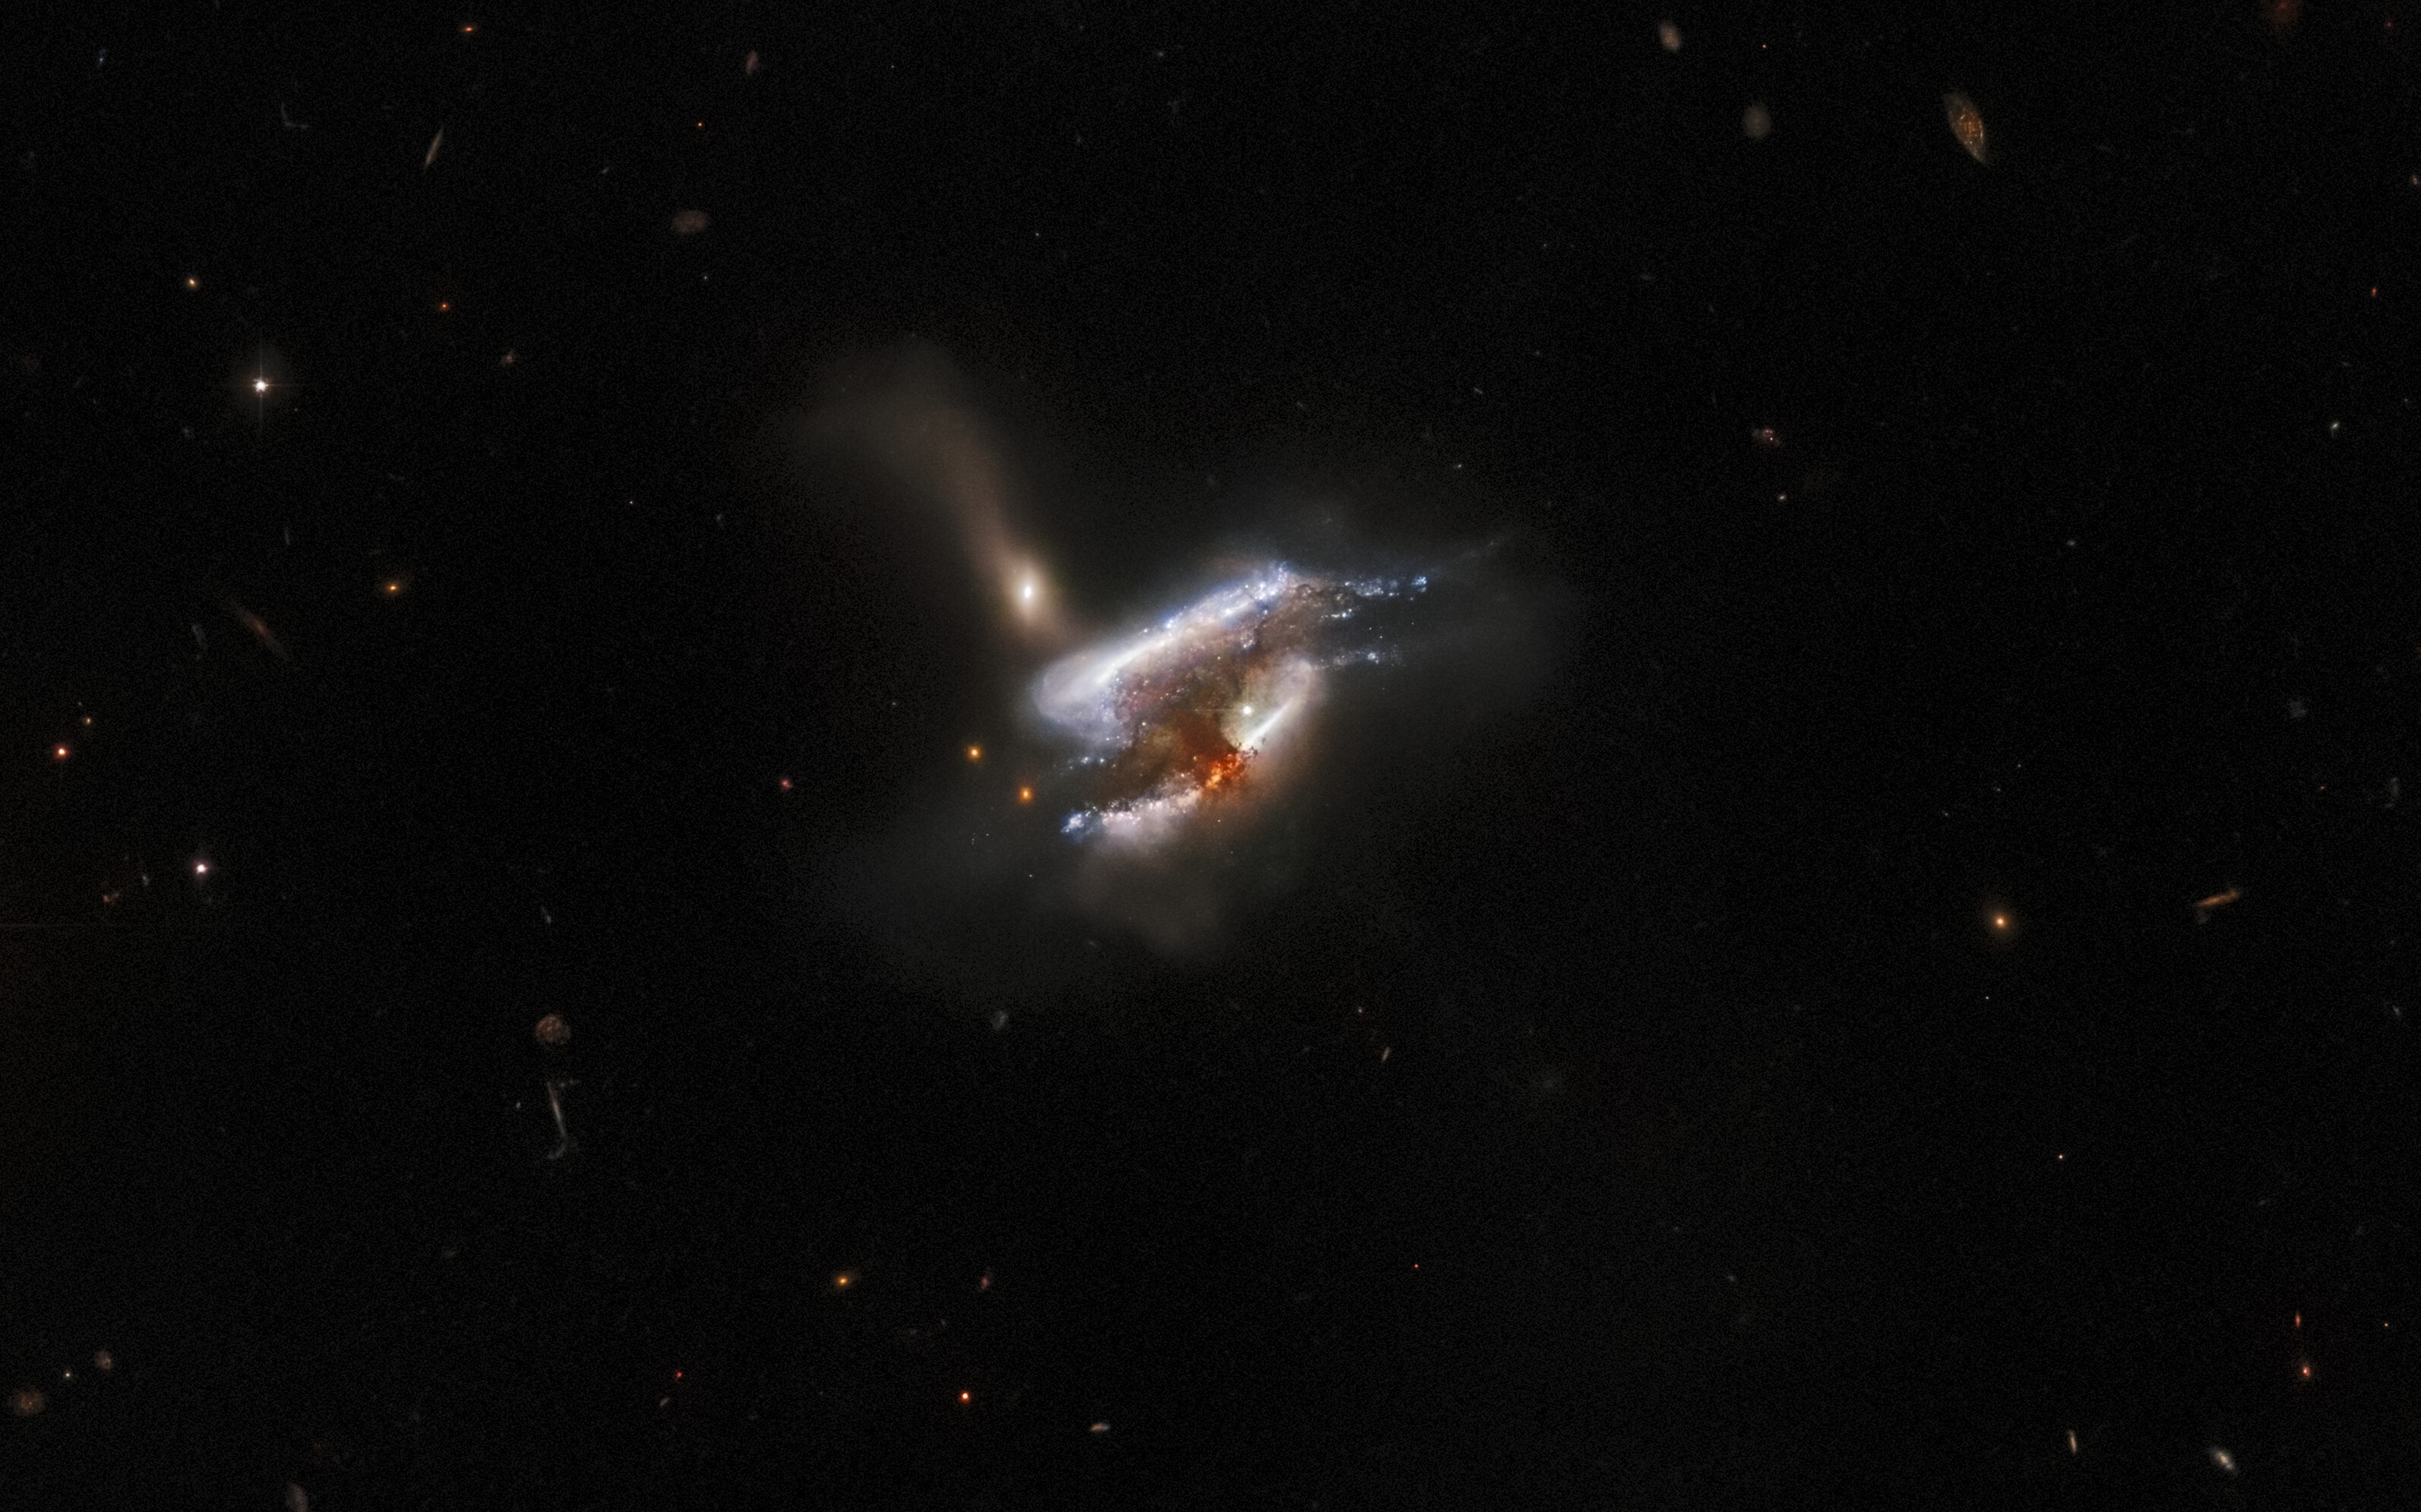 galaxies merging in a cloud of dust